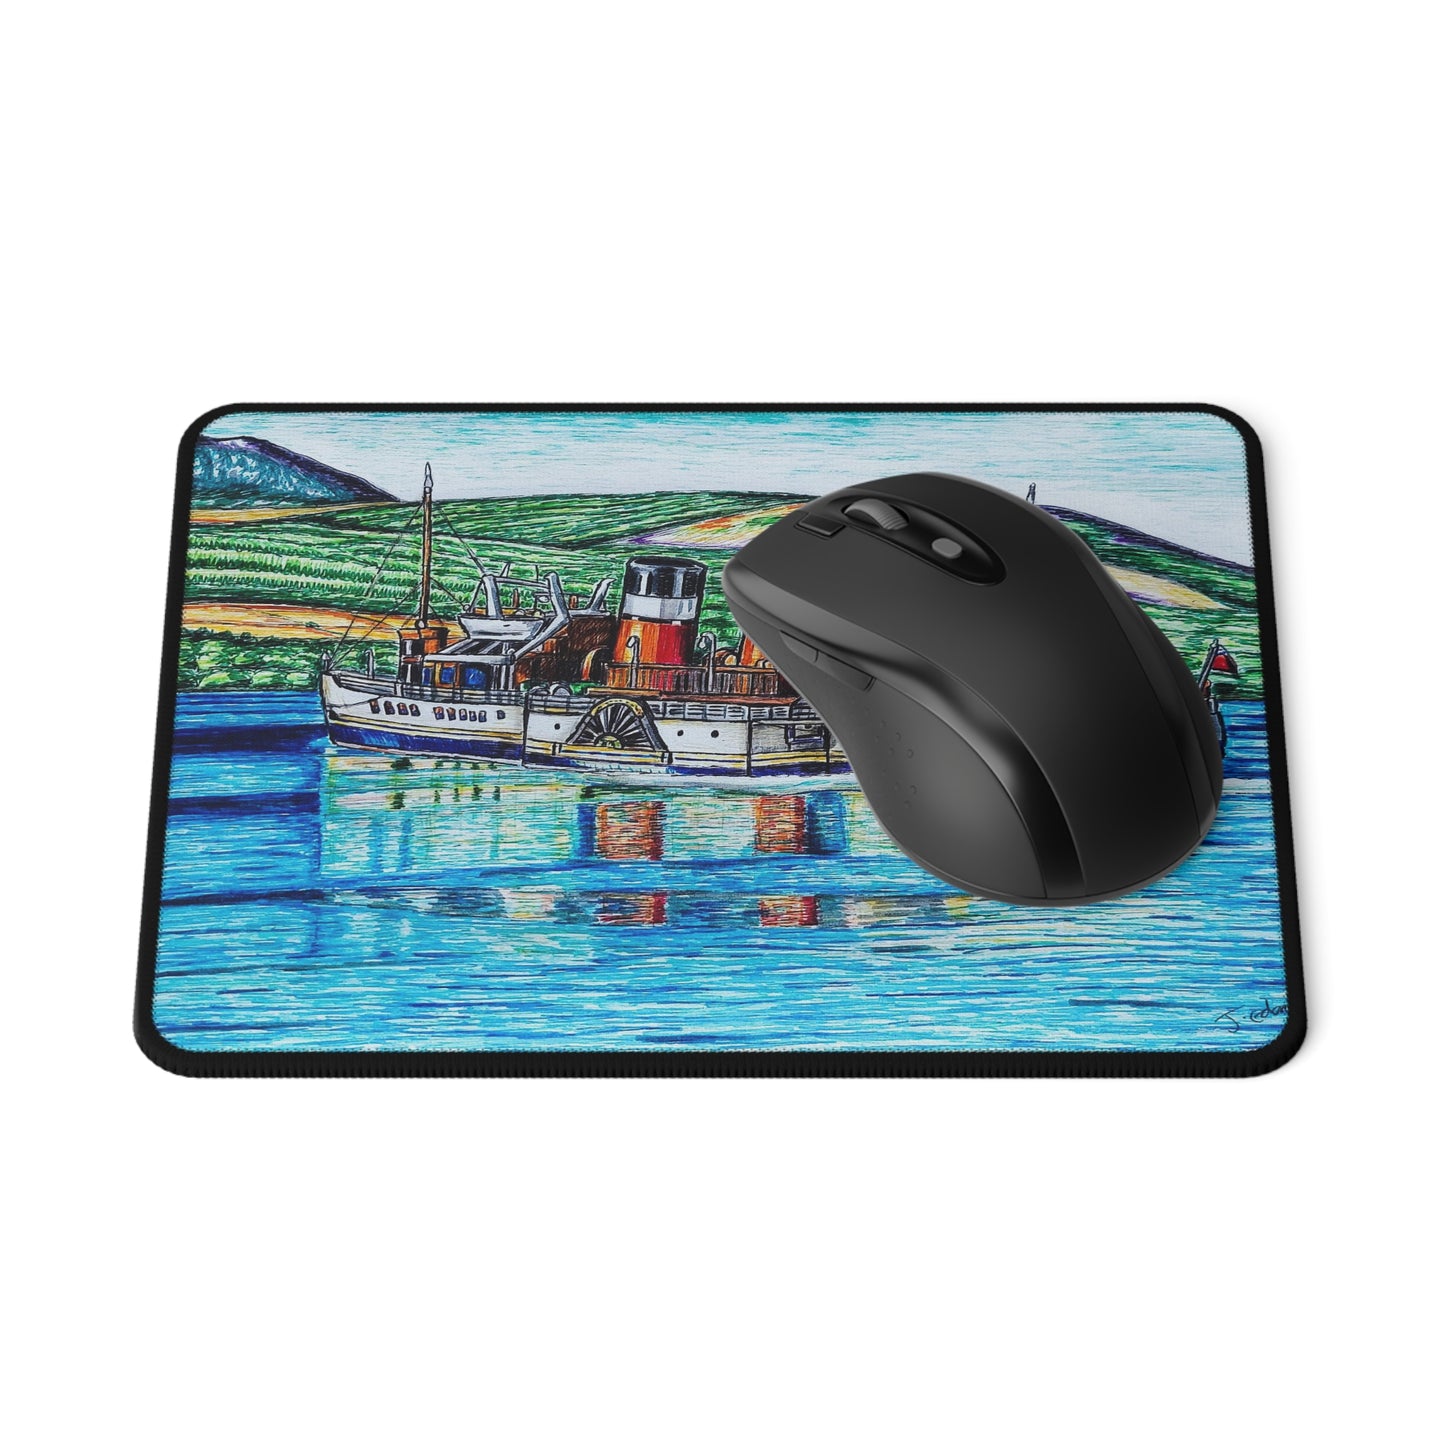 Non-Slip Mouse Pad- Waverley Paddlesteamer Design